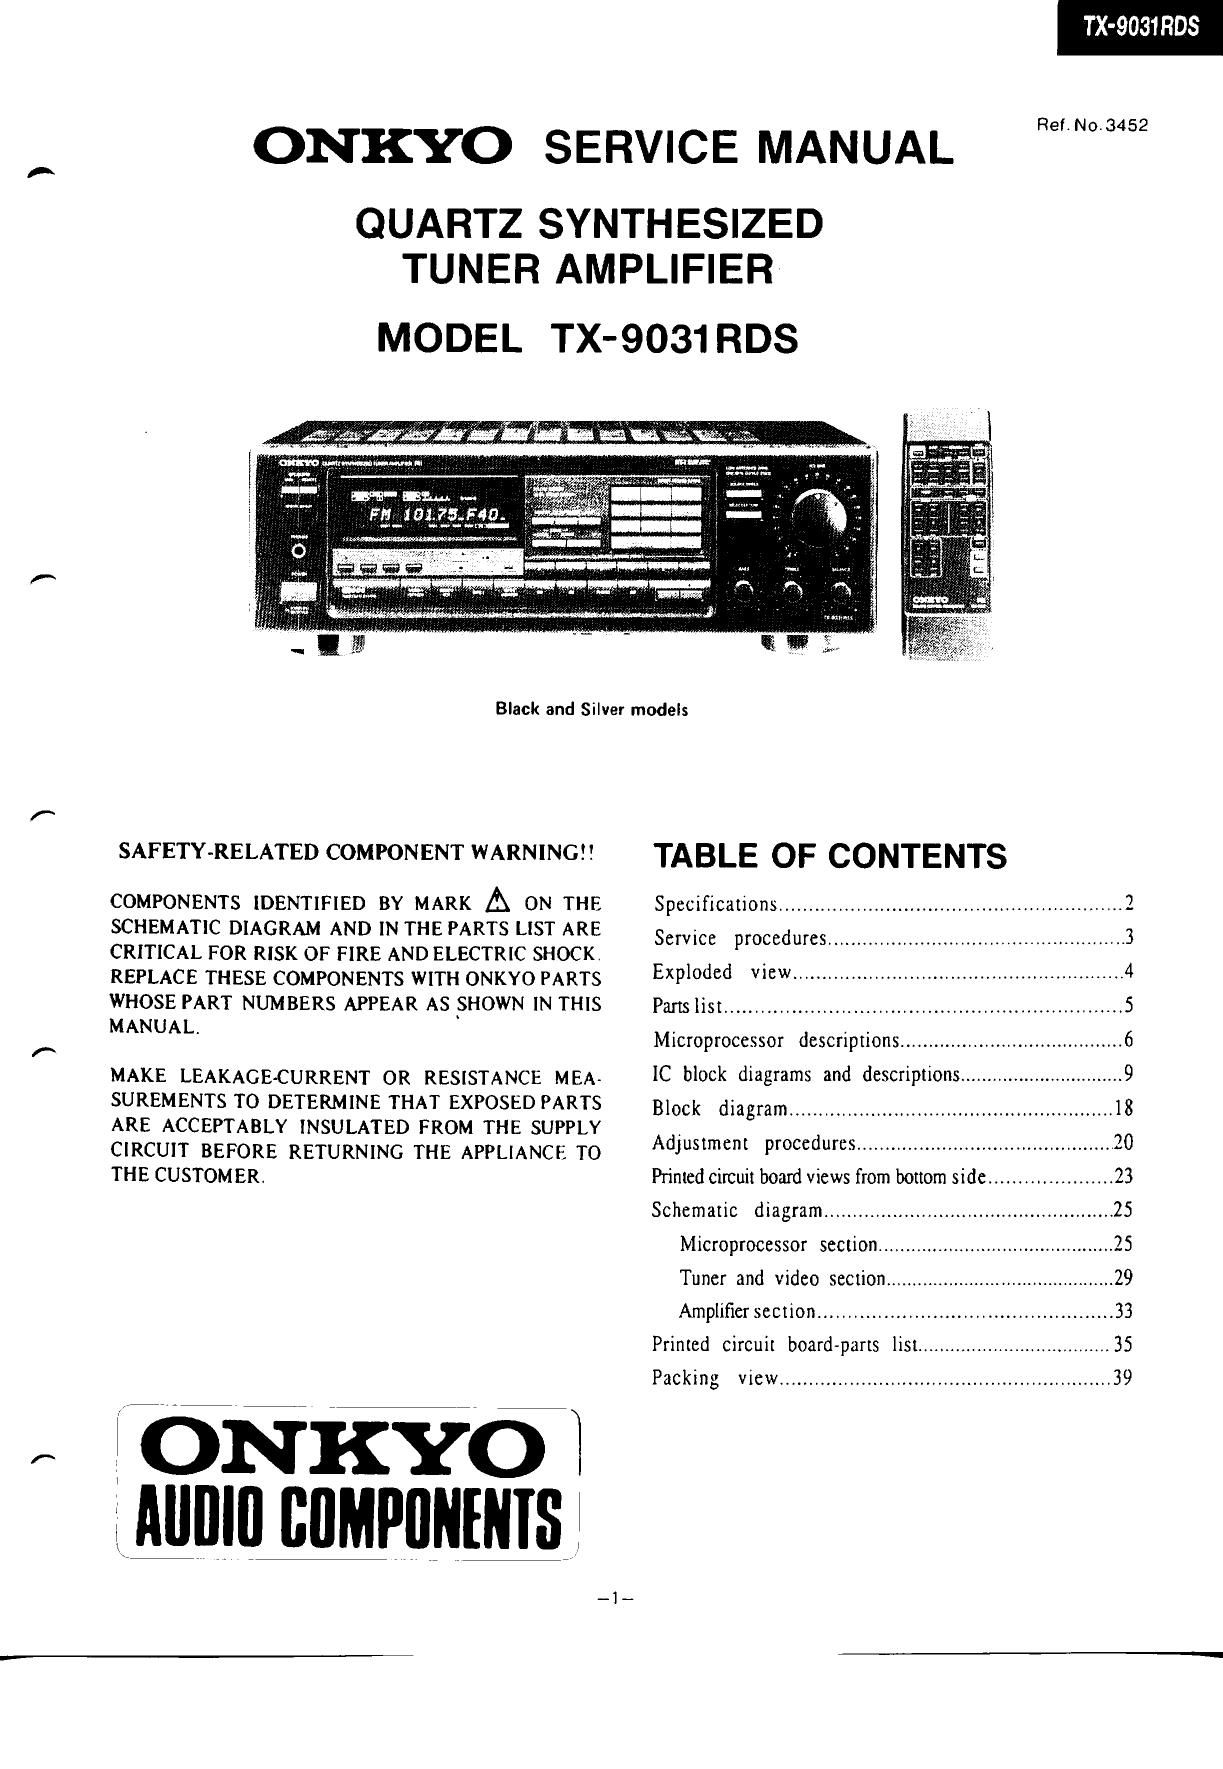 Onkyo TX 9031 Service Manual